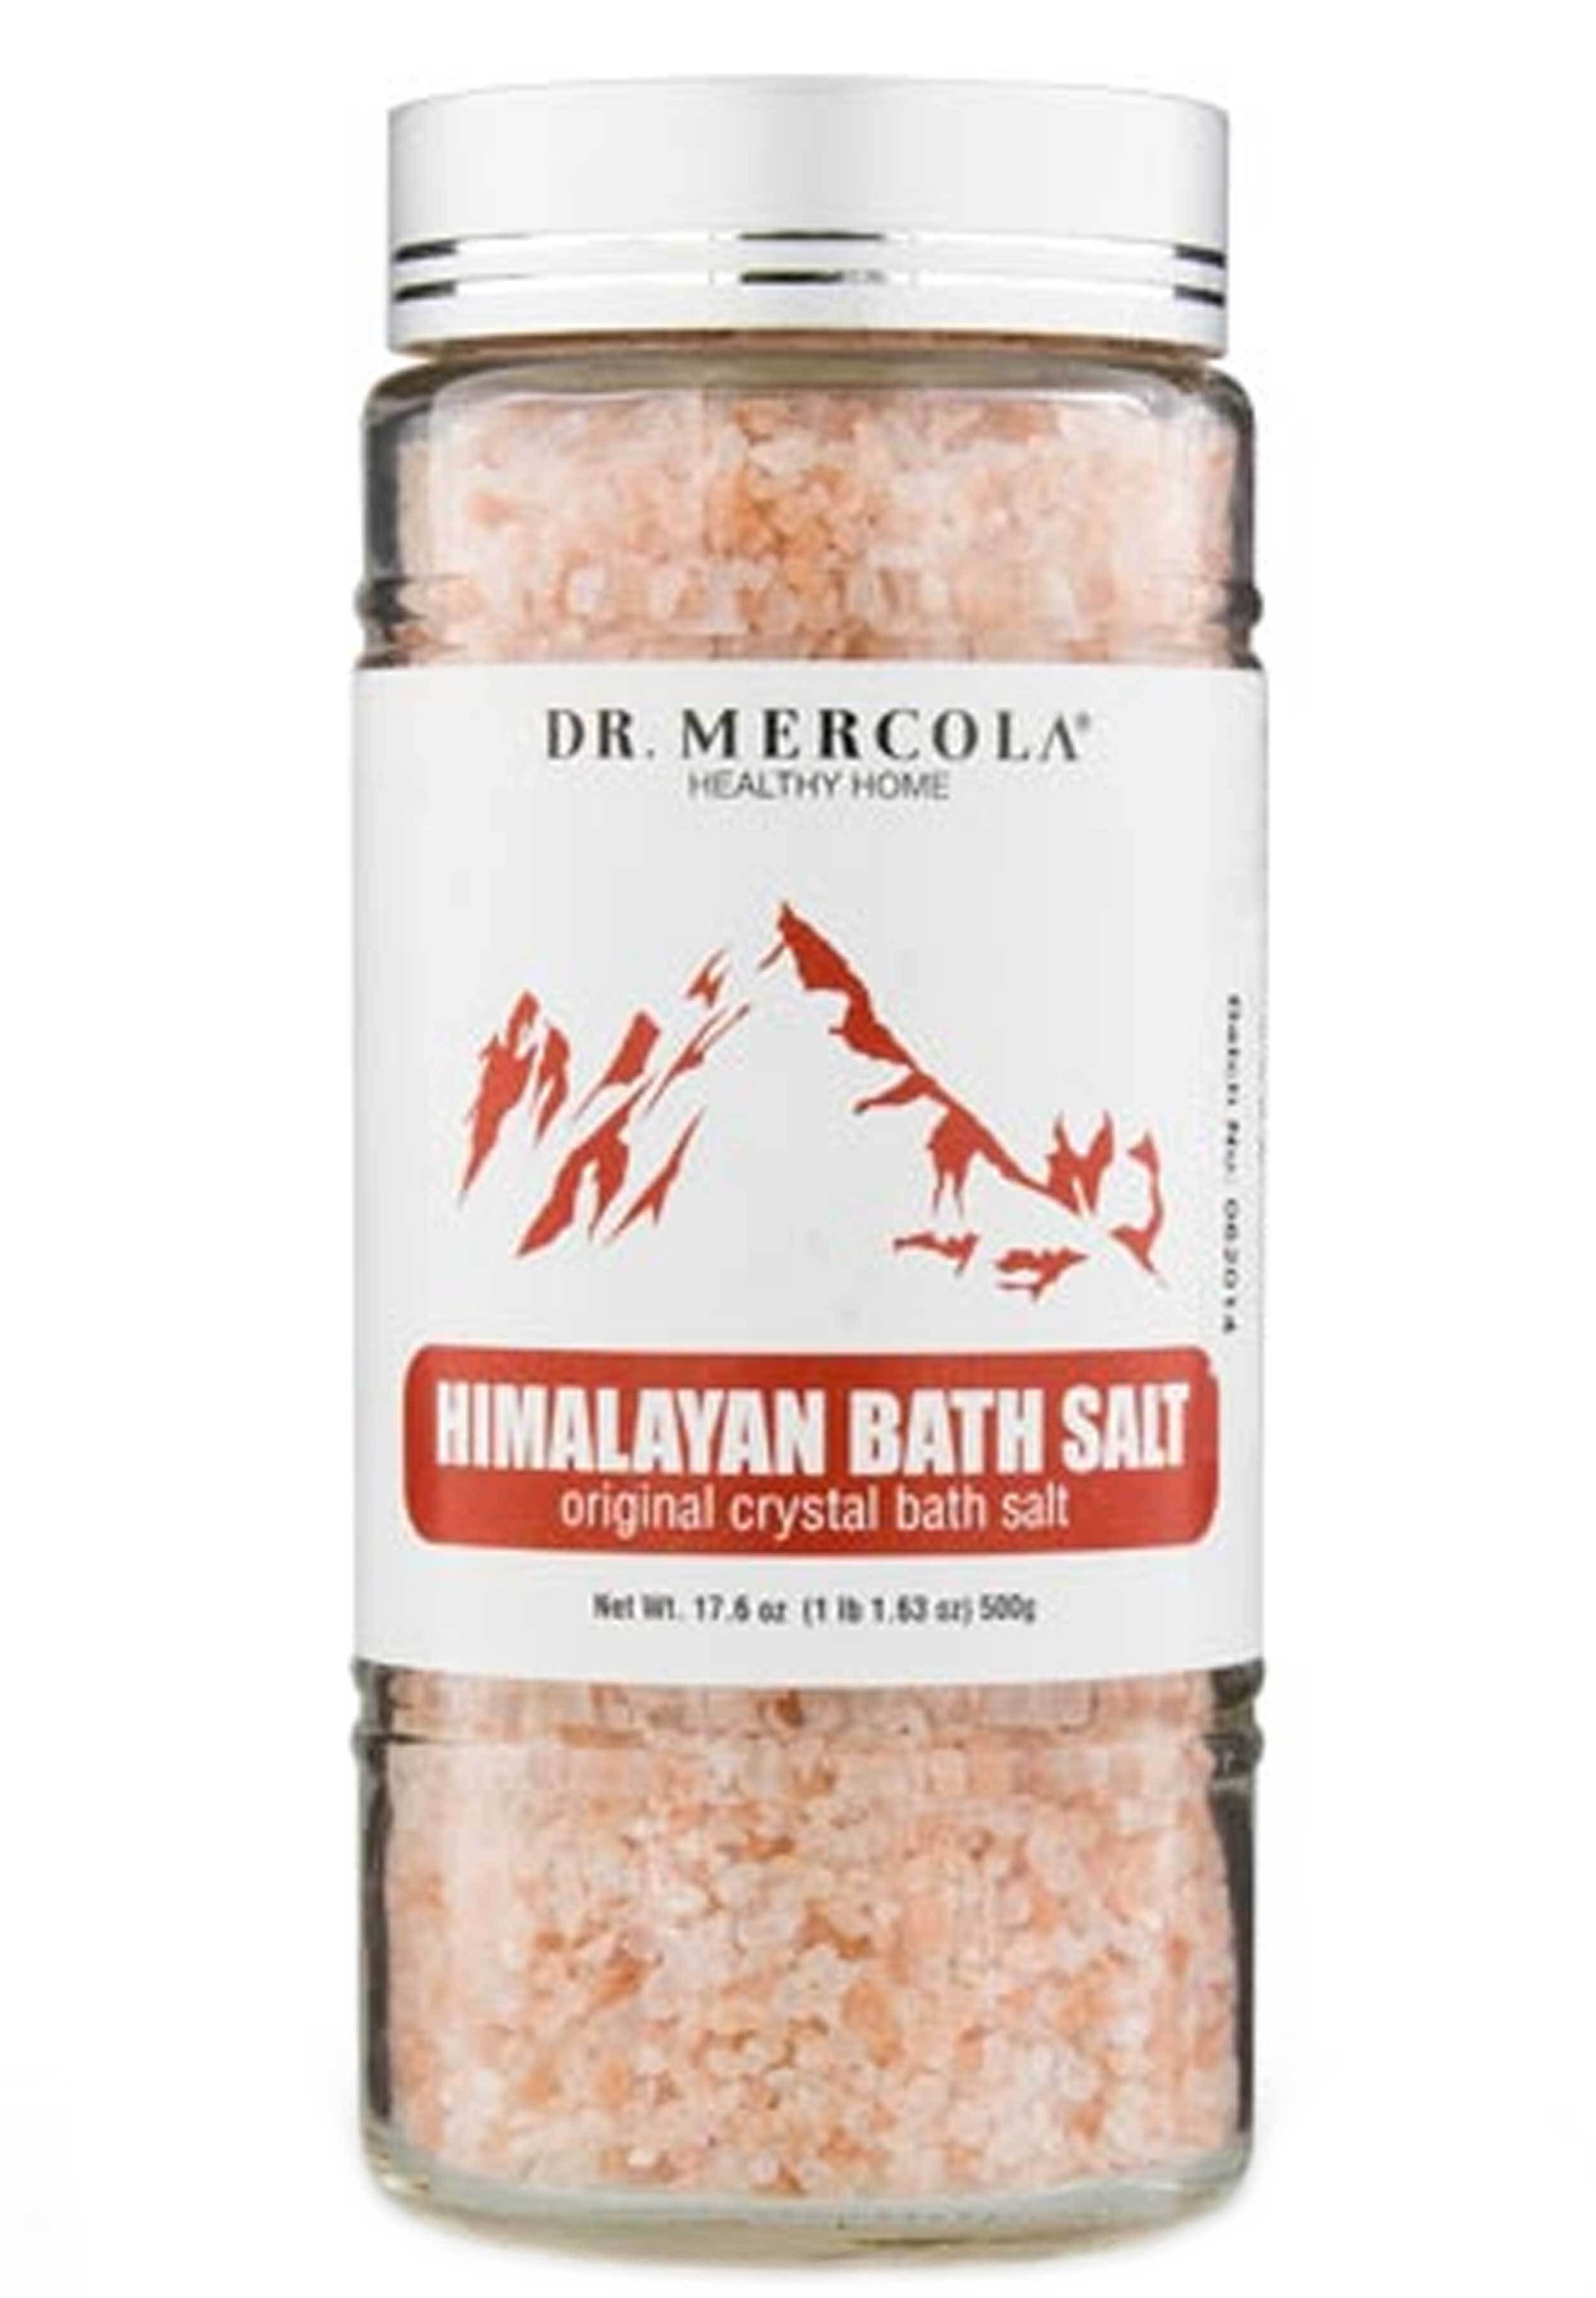 Dr. Mercola Himalayan Bath Salt